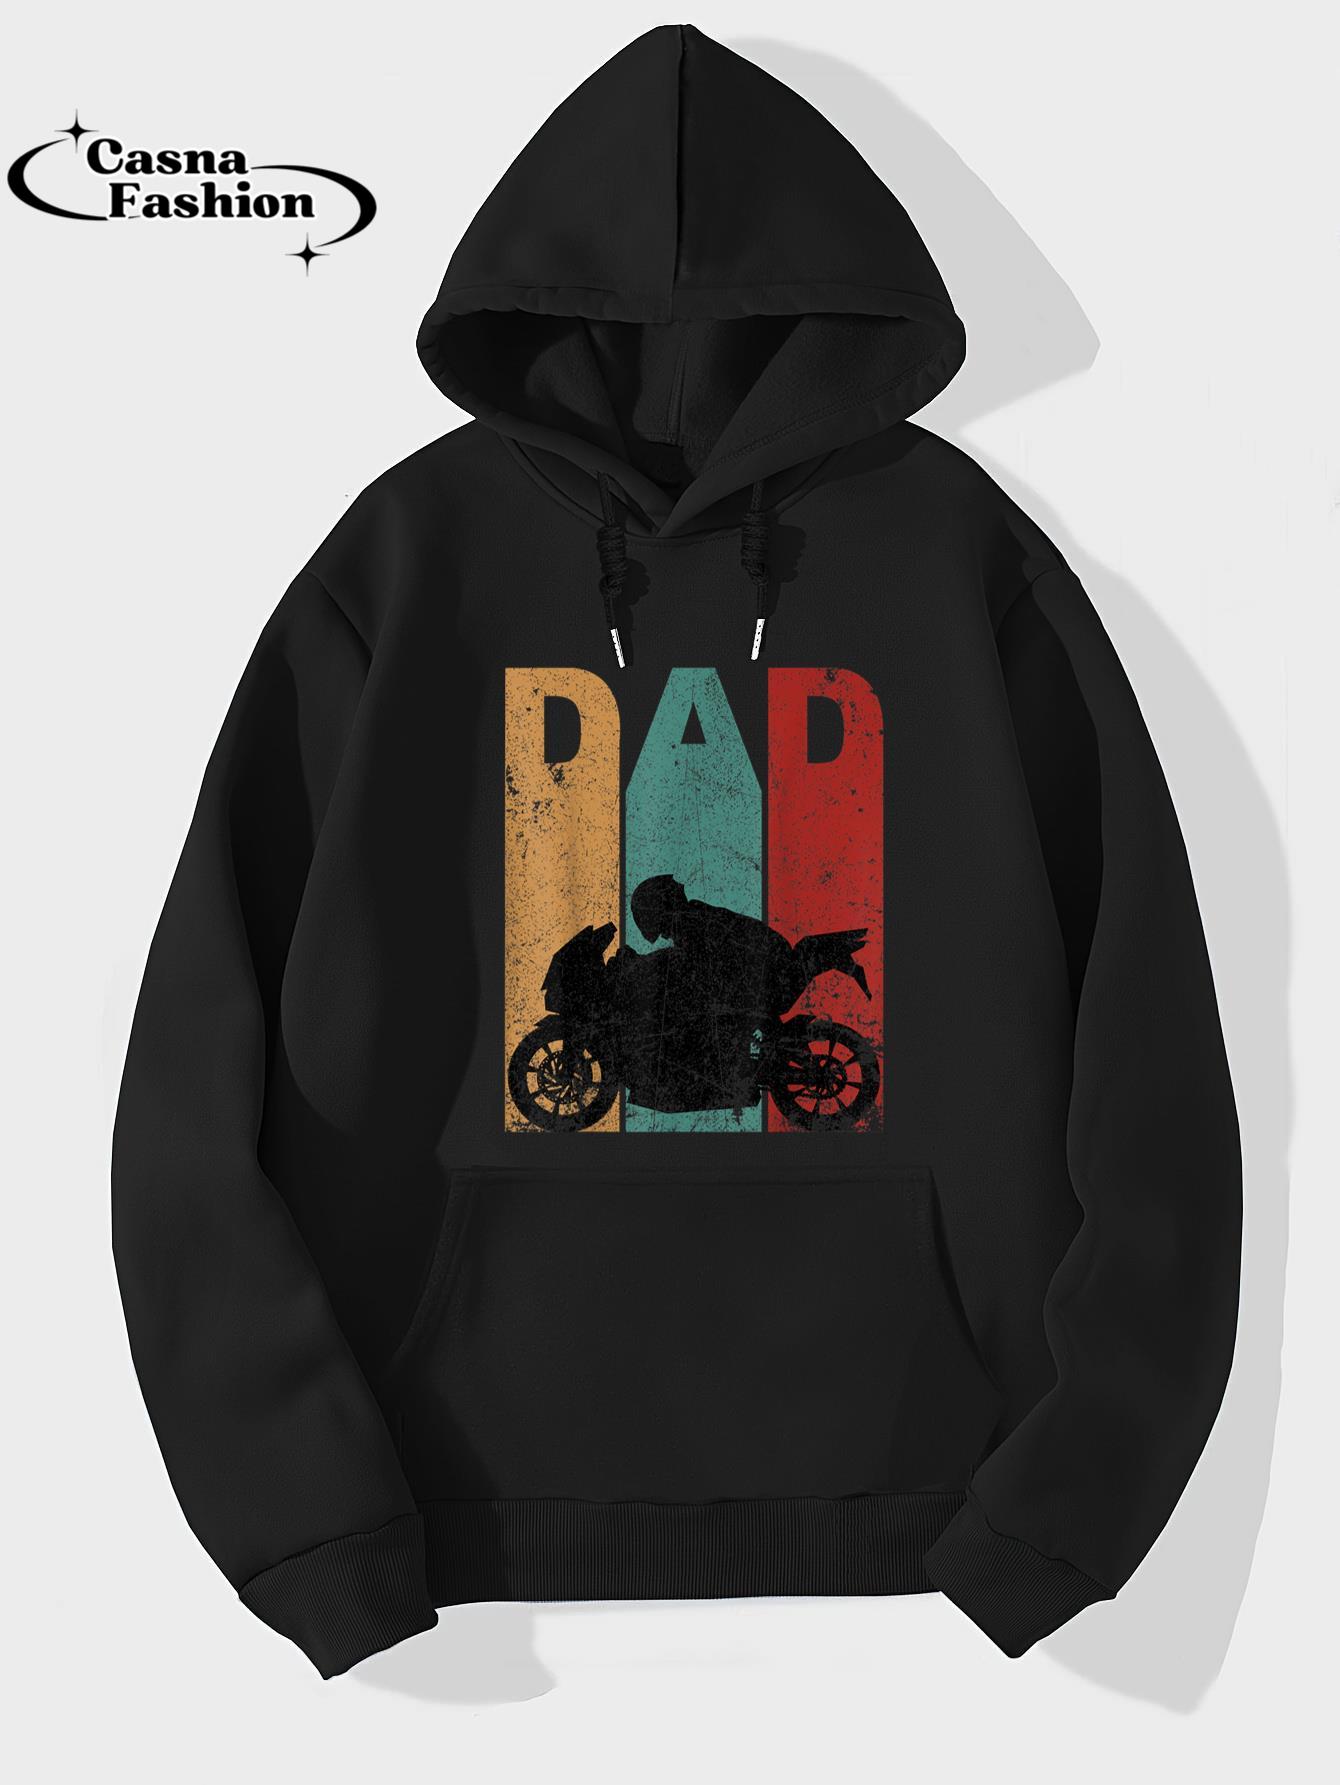 casnafashion_Hoodie_Vintage Sport Bike Dad Fathers Day Gift Biker Motorcycle T-Shirt_hoodie_black hoodie